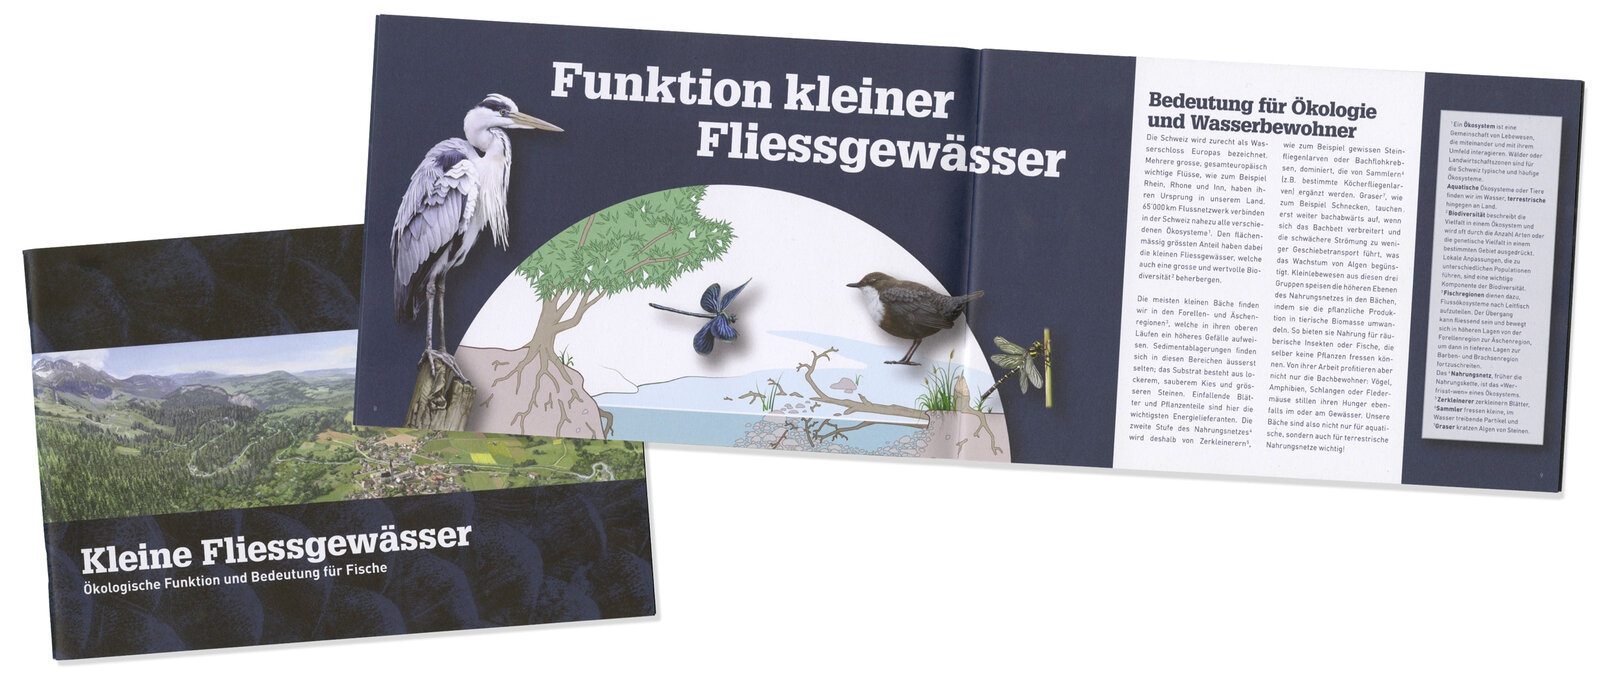 oculus-illustration-fliessgewaesser-publikation